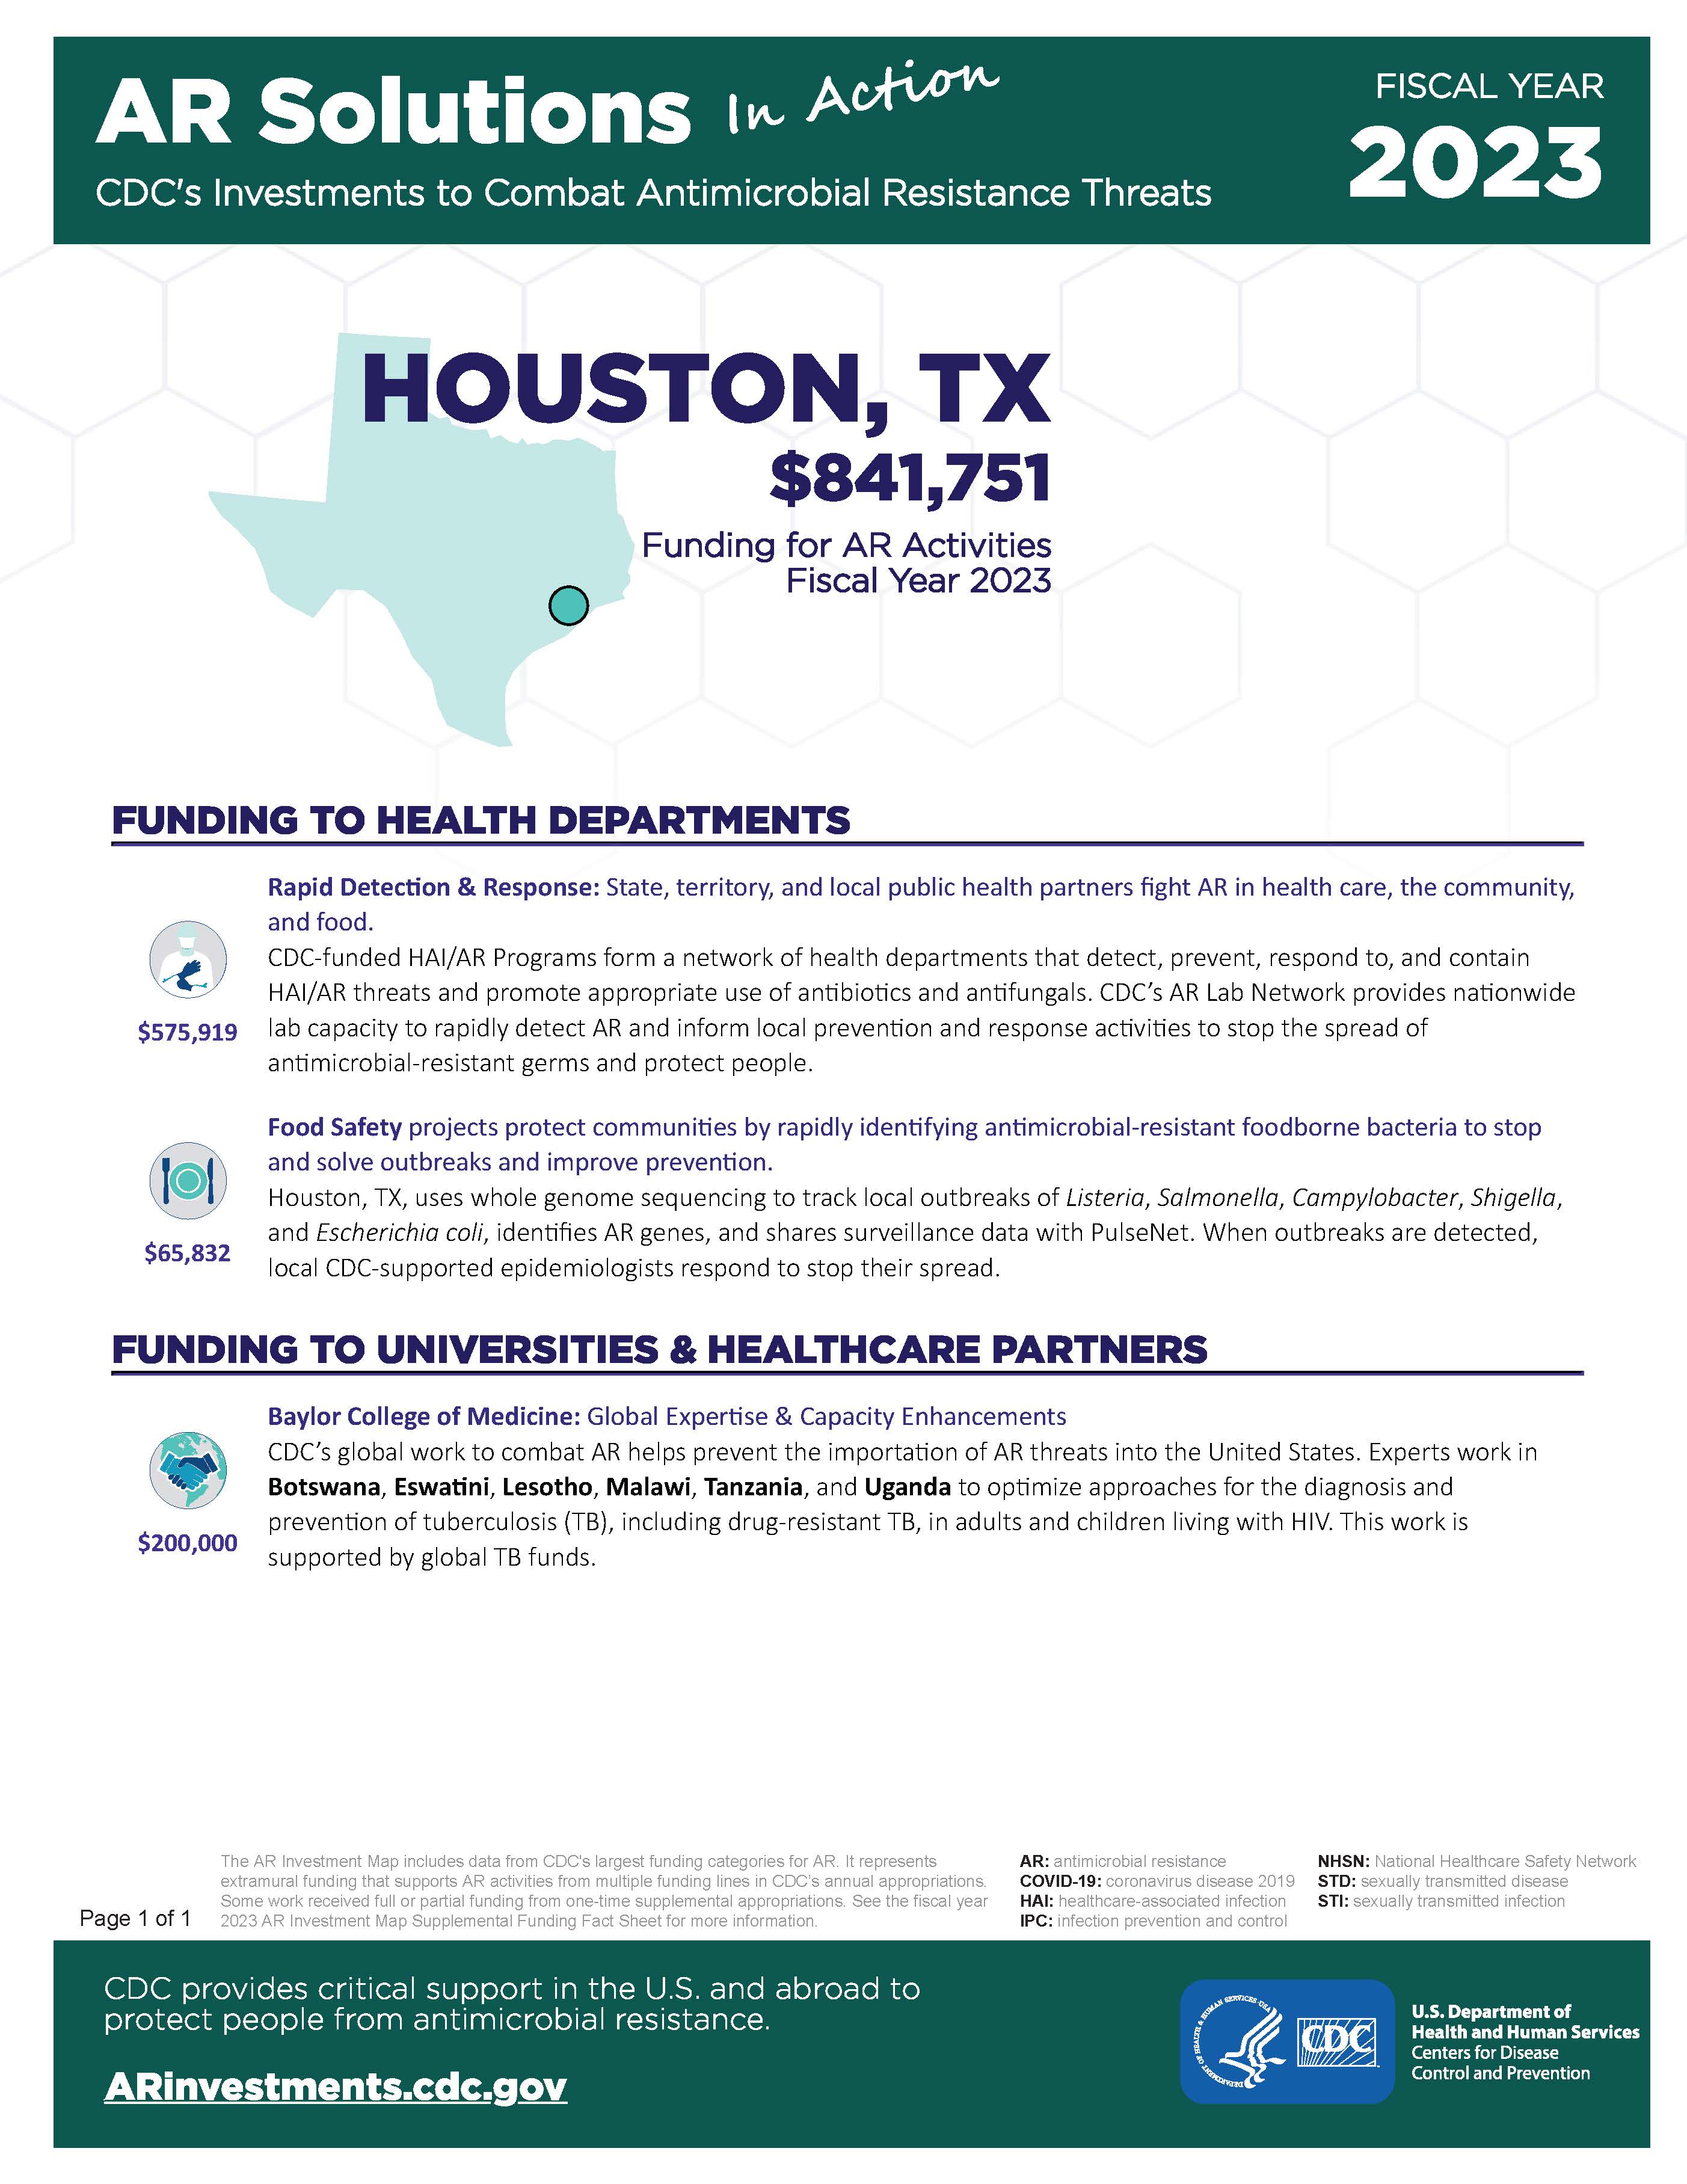 View Factsheet for Houston, TX